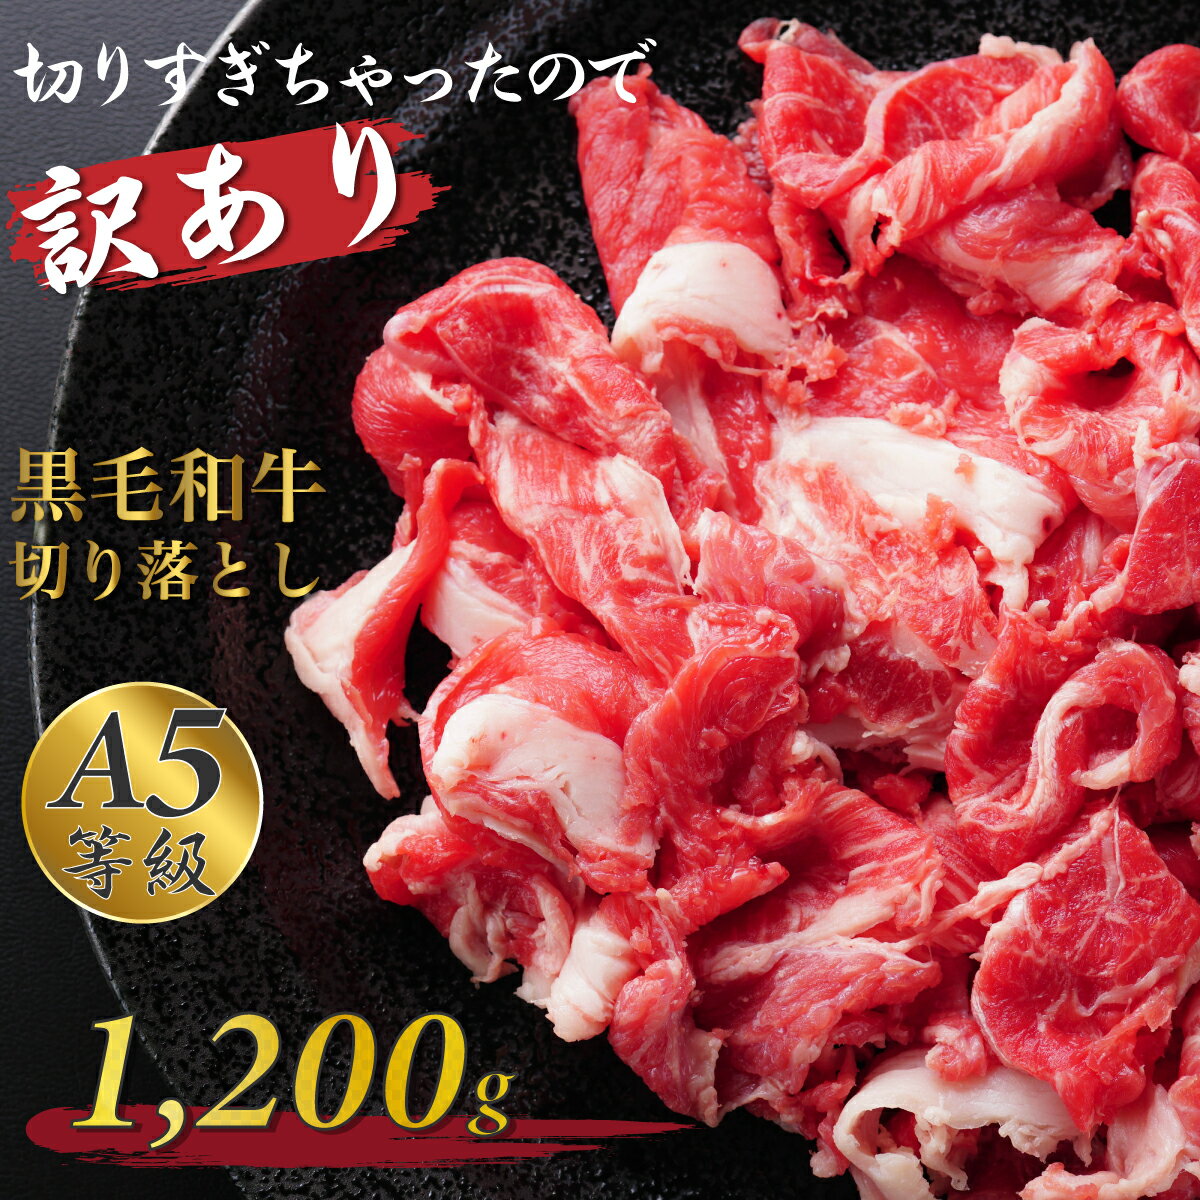 黒毛和牛煮込み用角切り肉500g(250gx2パック)小分けで便利冷凍品 牛肉 カレー シチュー 煮込み トロトロに煮込めば